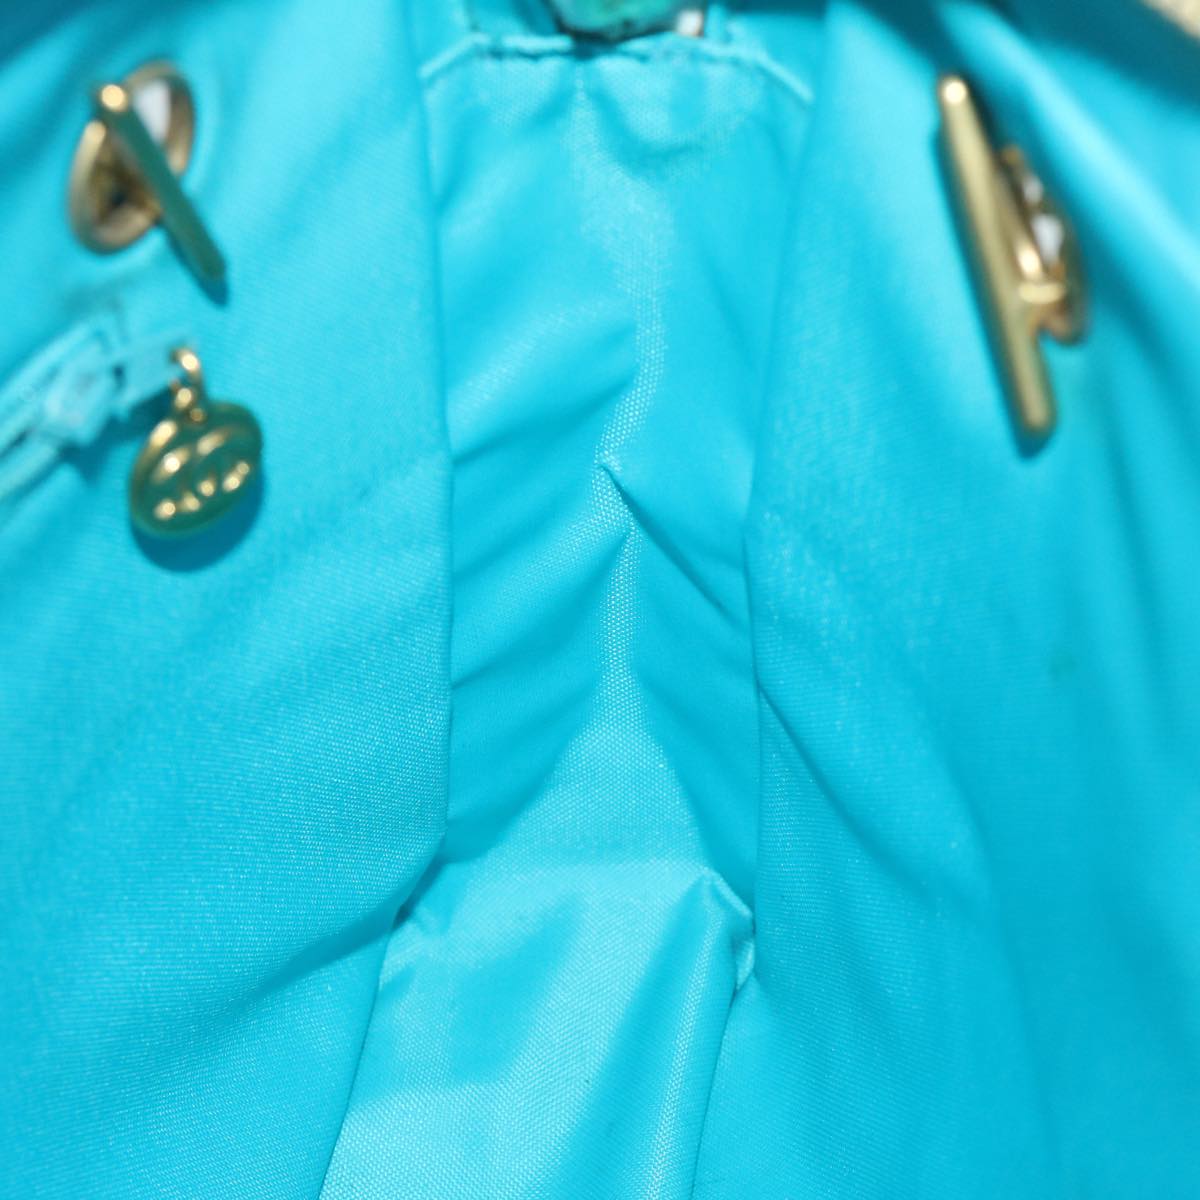 CHANEL Matelasse Chain Shoulder Bag Canvas Turquoise Blue CC Auth bs10627